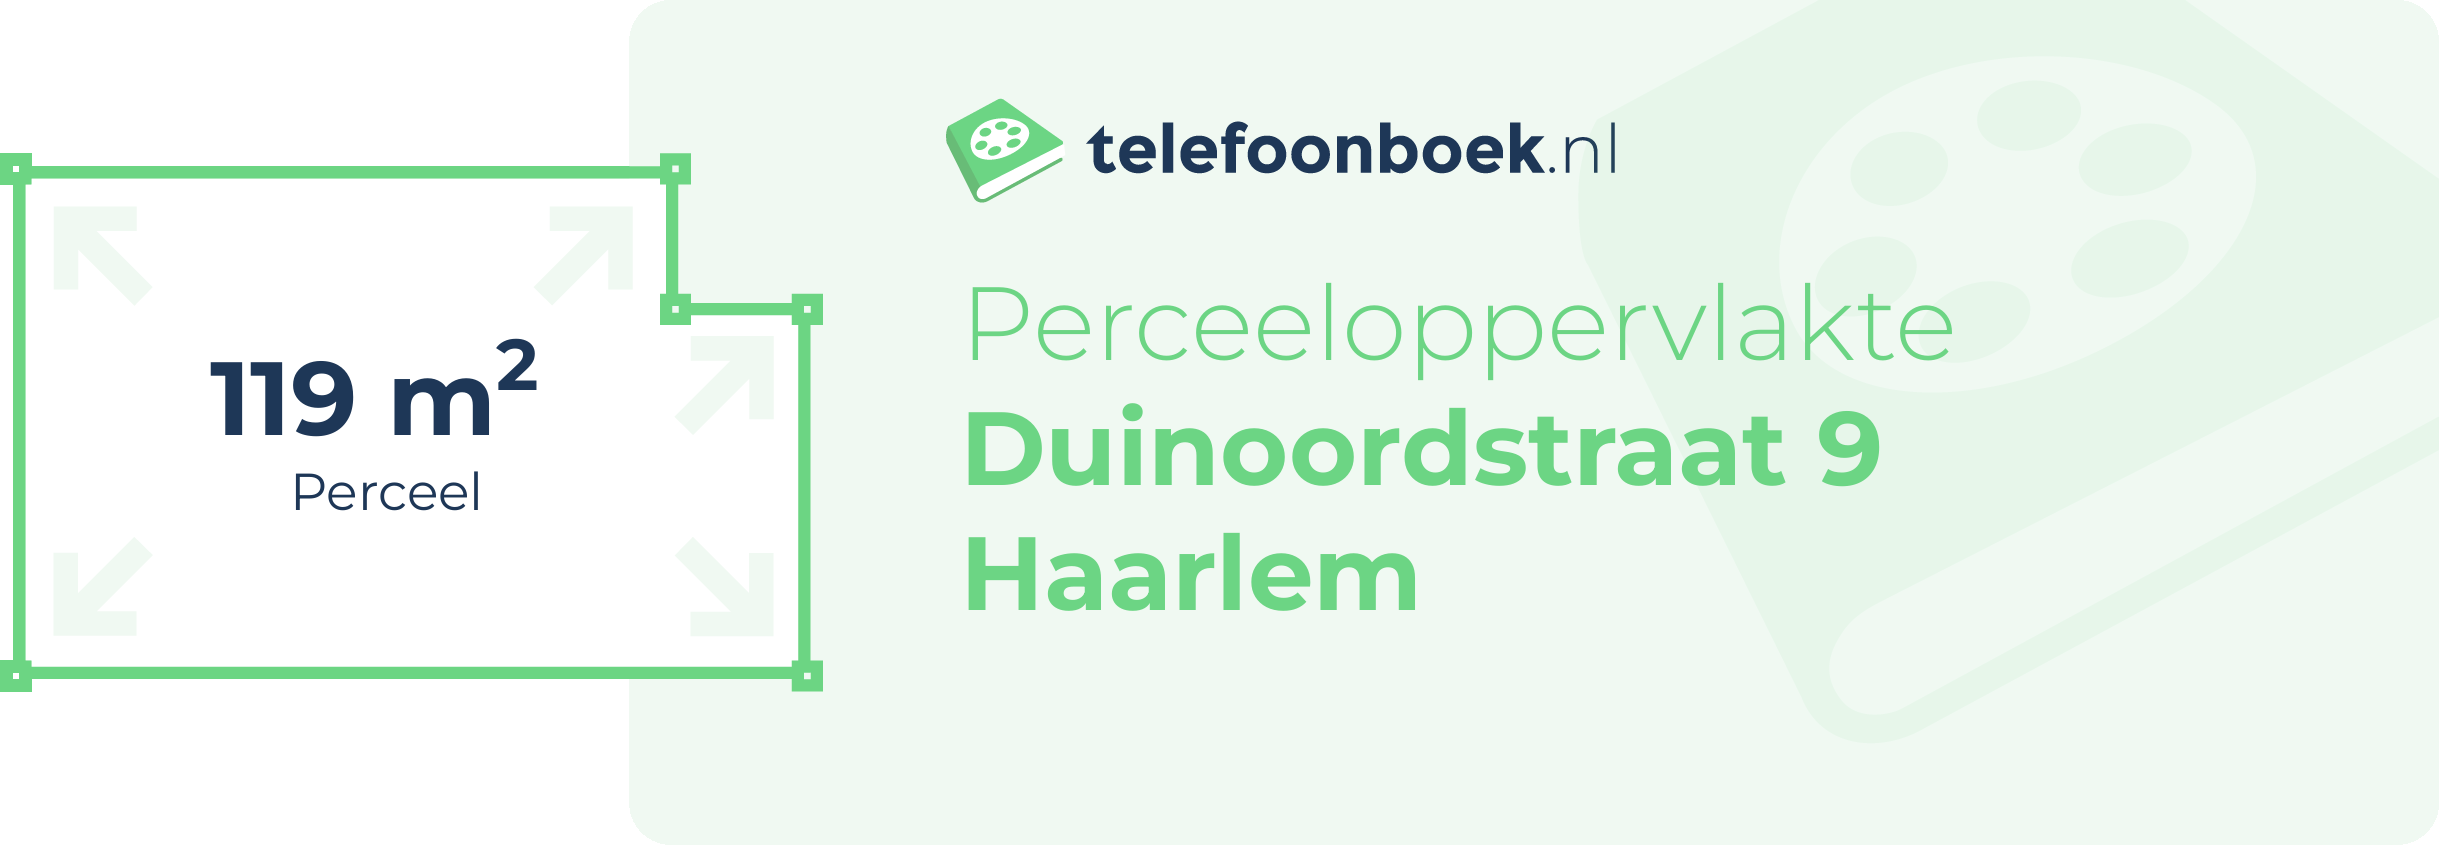 Perceeloppervlakte Duinoordstraat 9 Haarlem